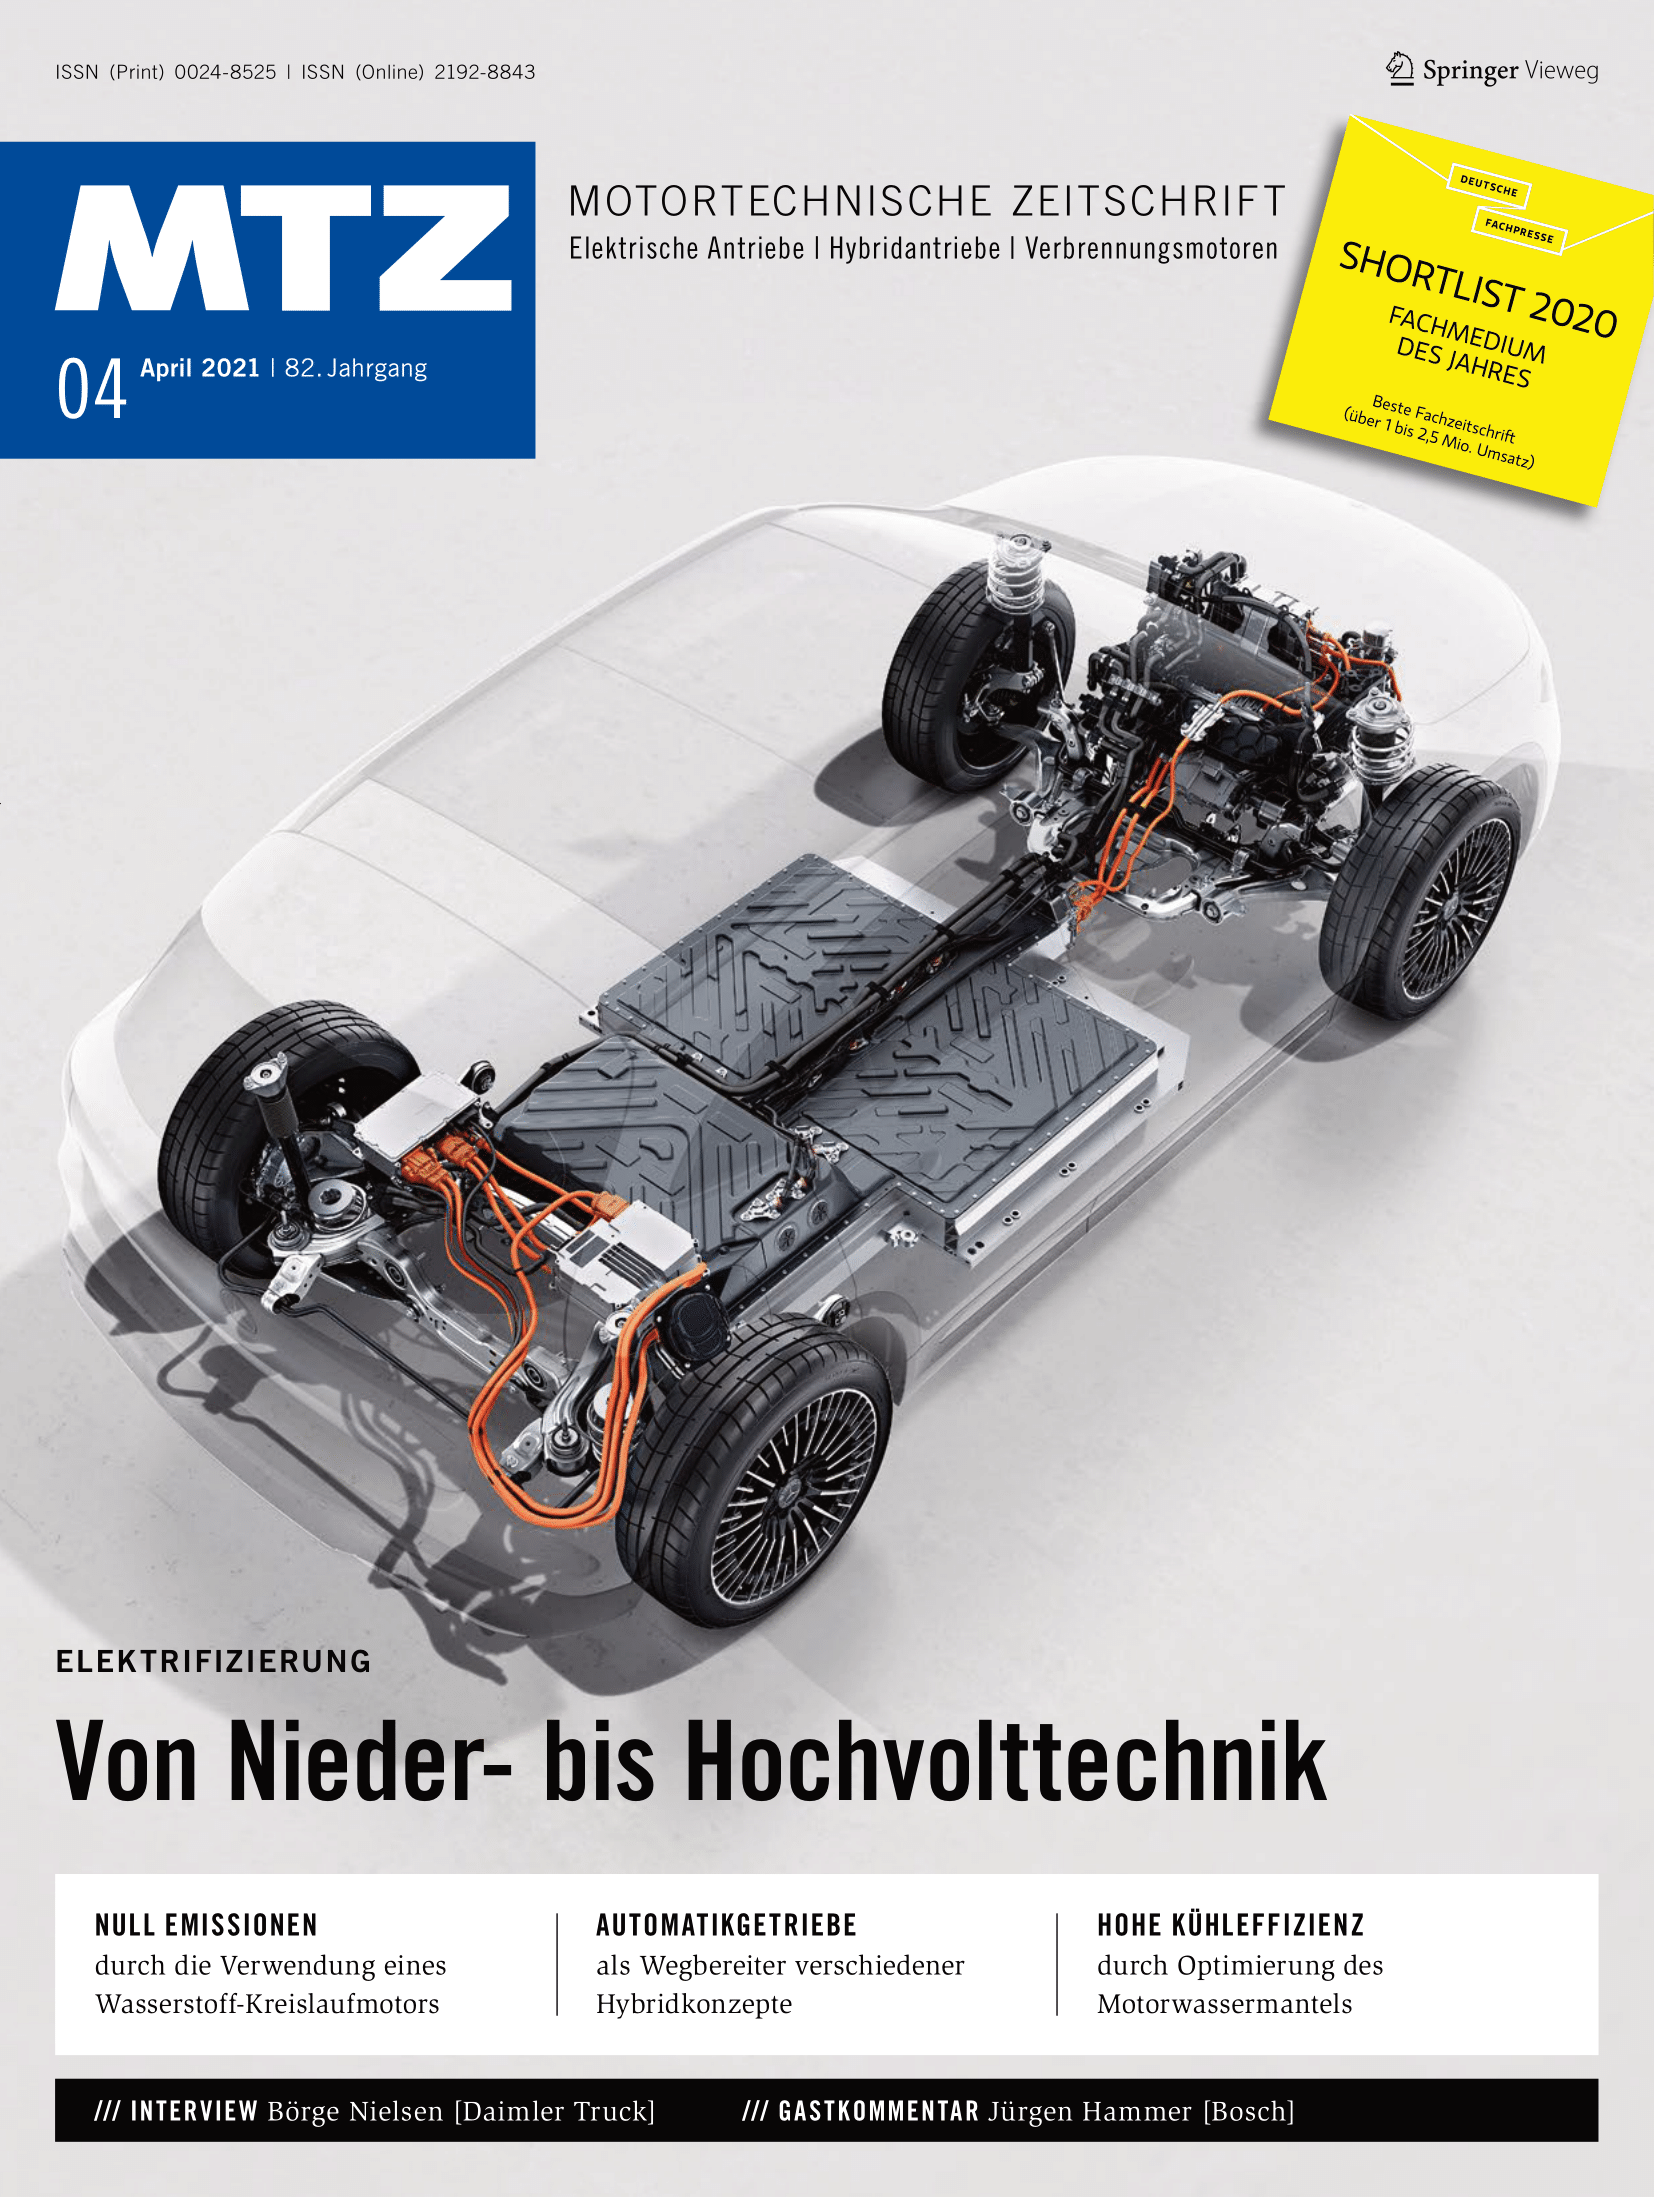 VDHC_Springer_Magazin (8)